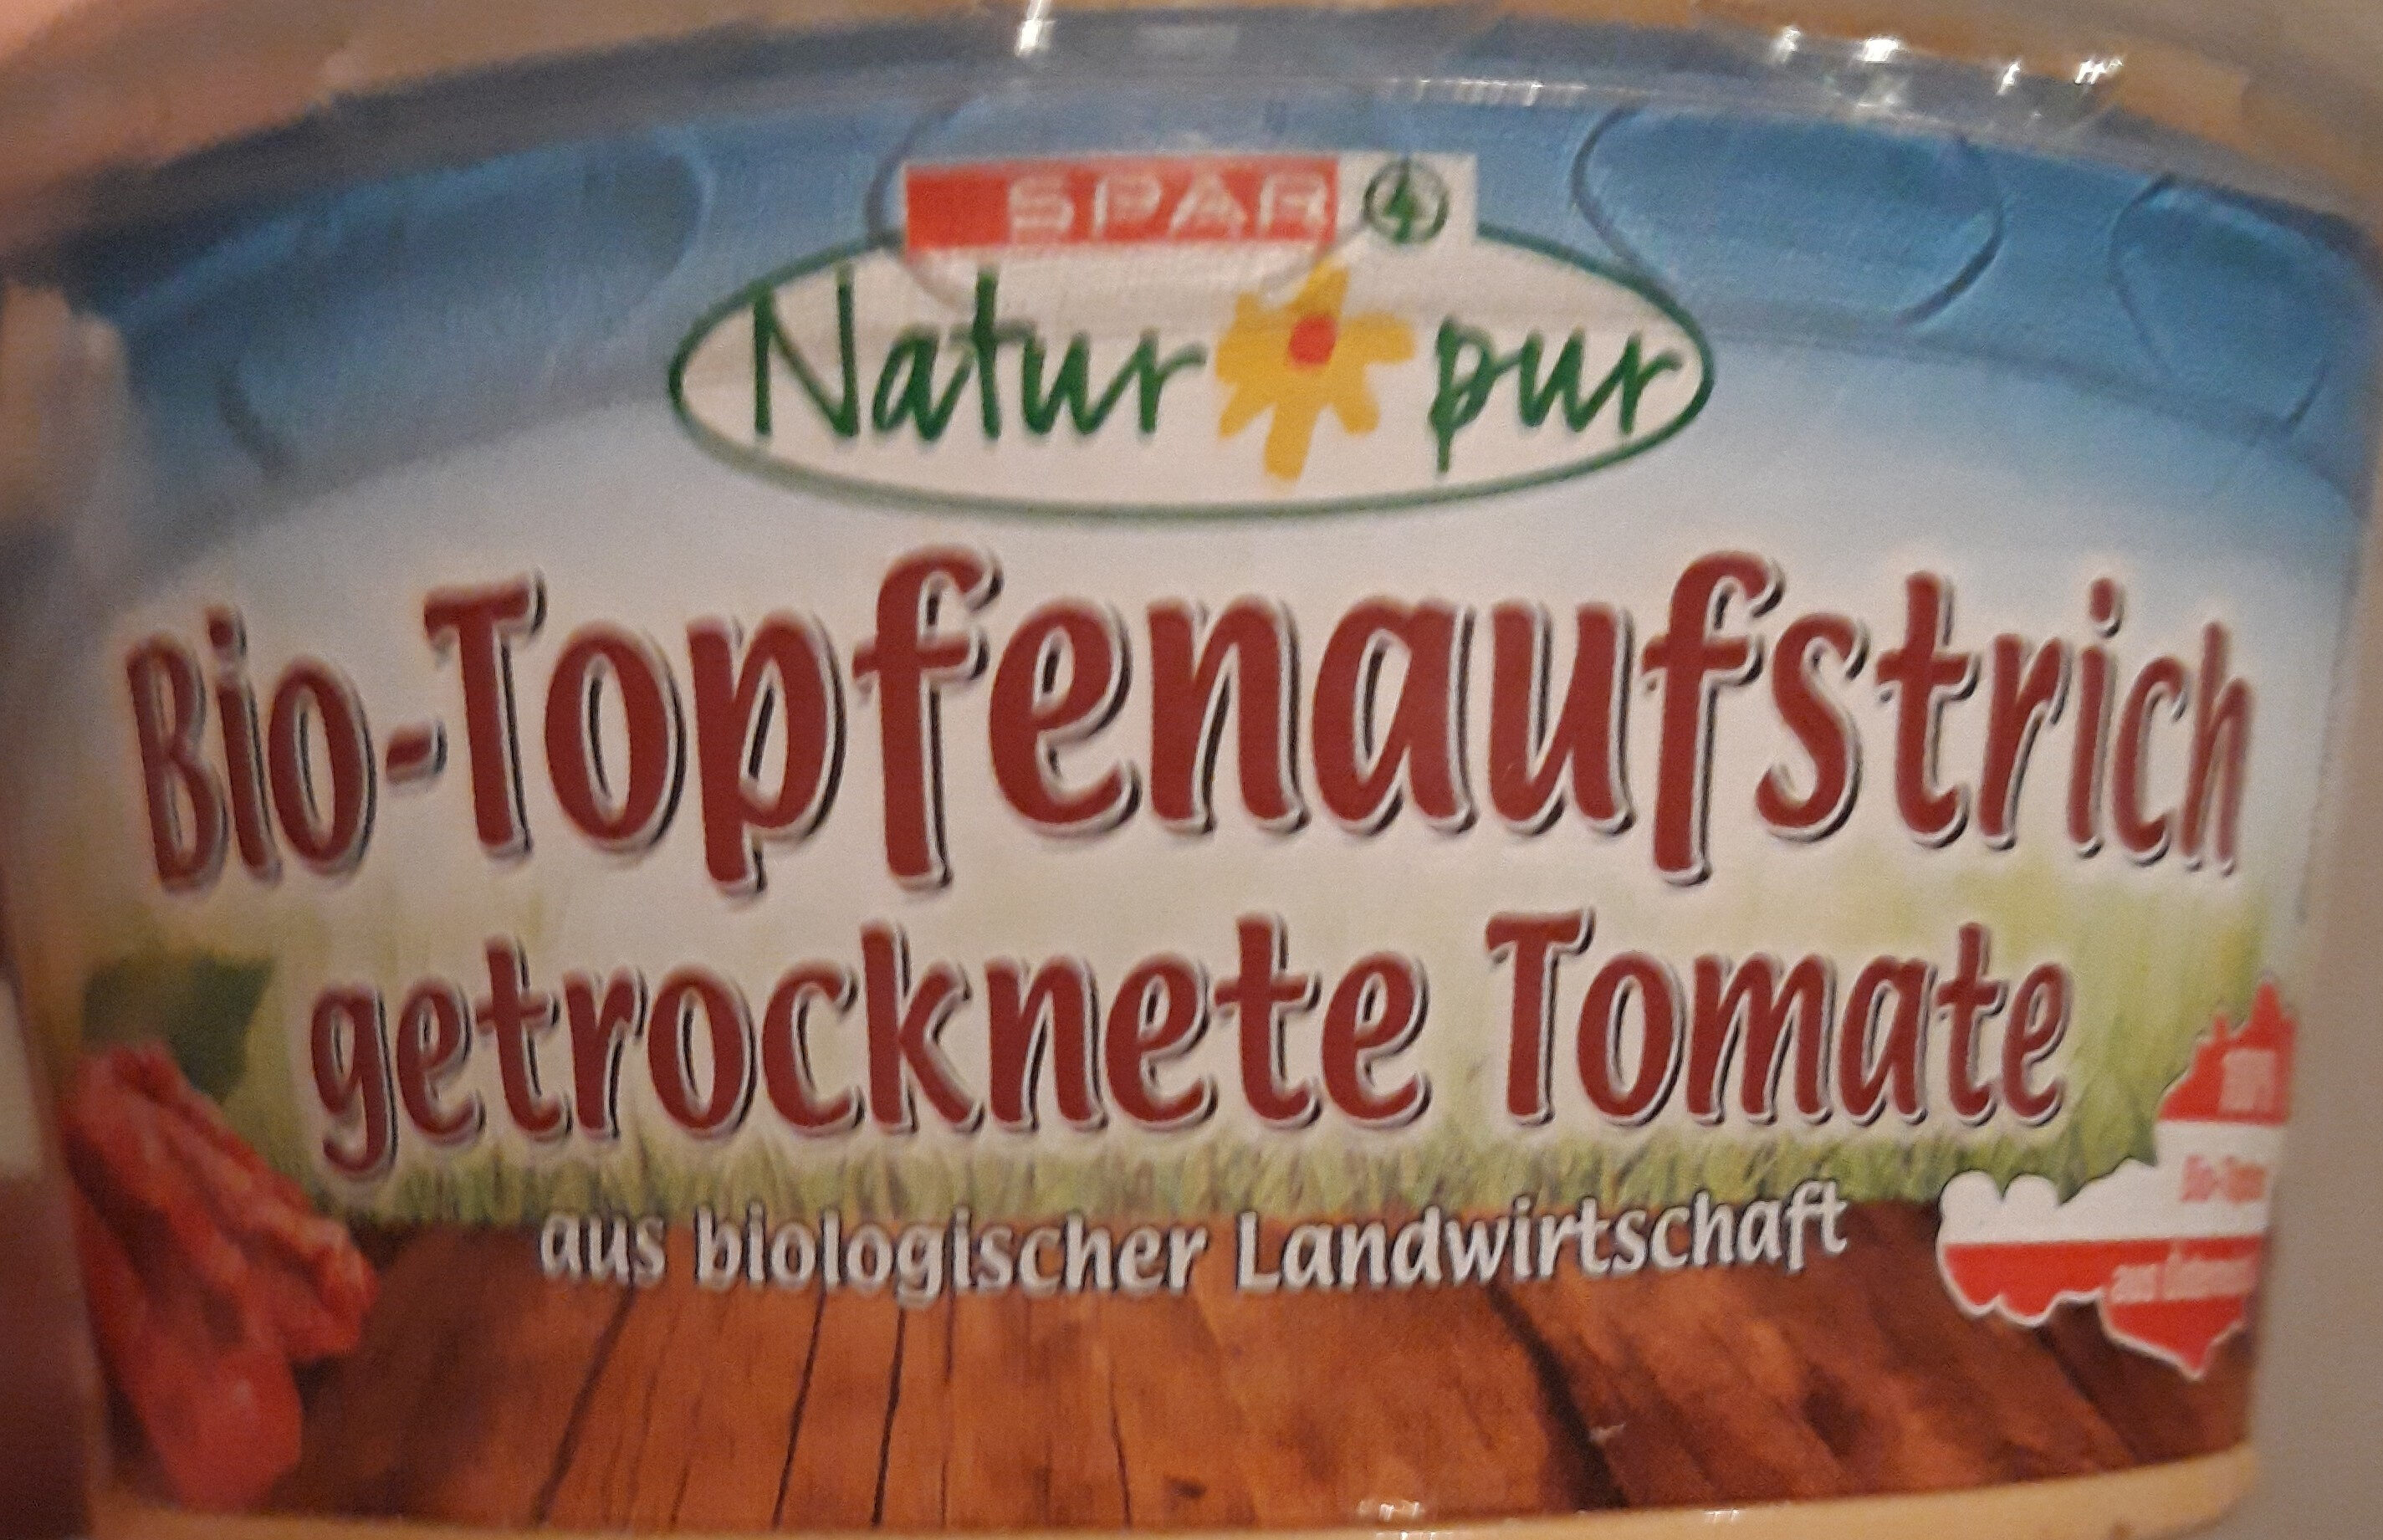 Bio-Topfenaufstrich getrocknete Tomate - Produkt